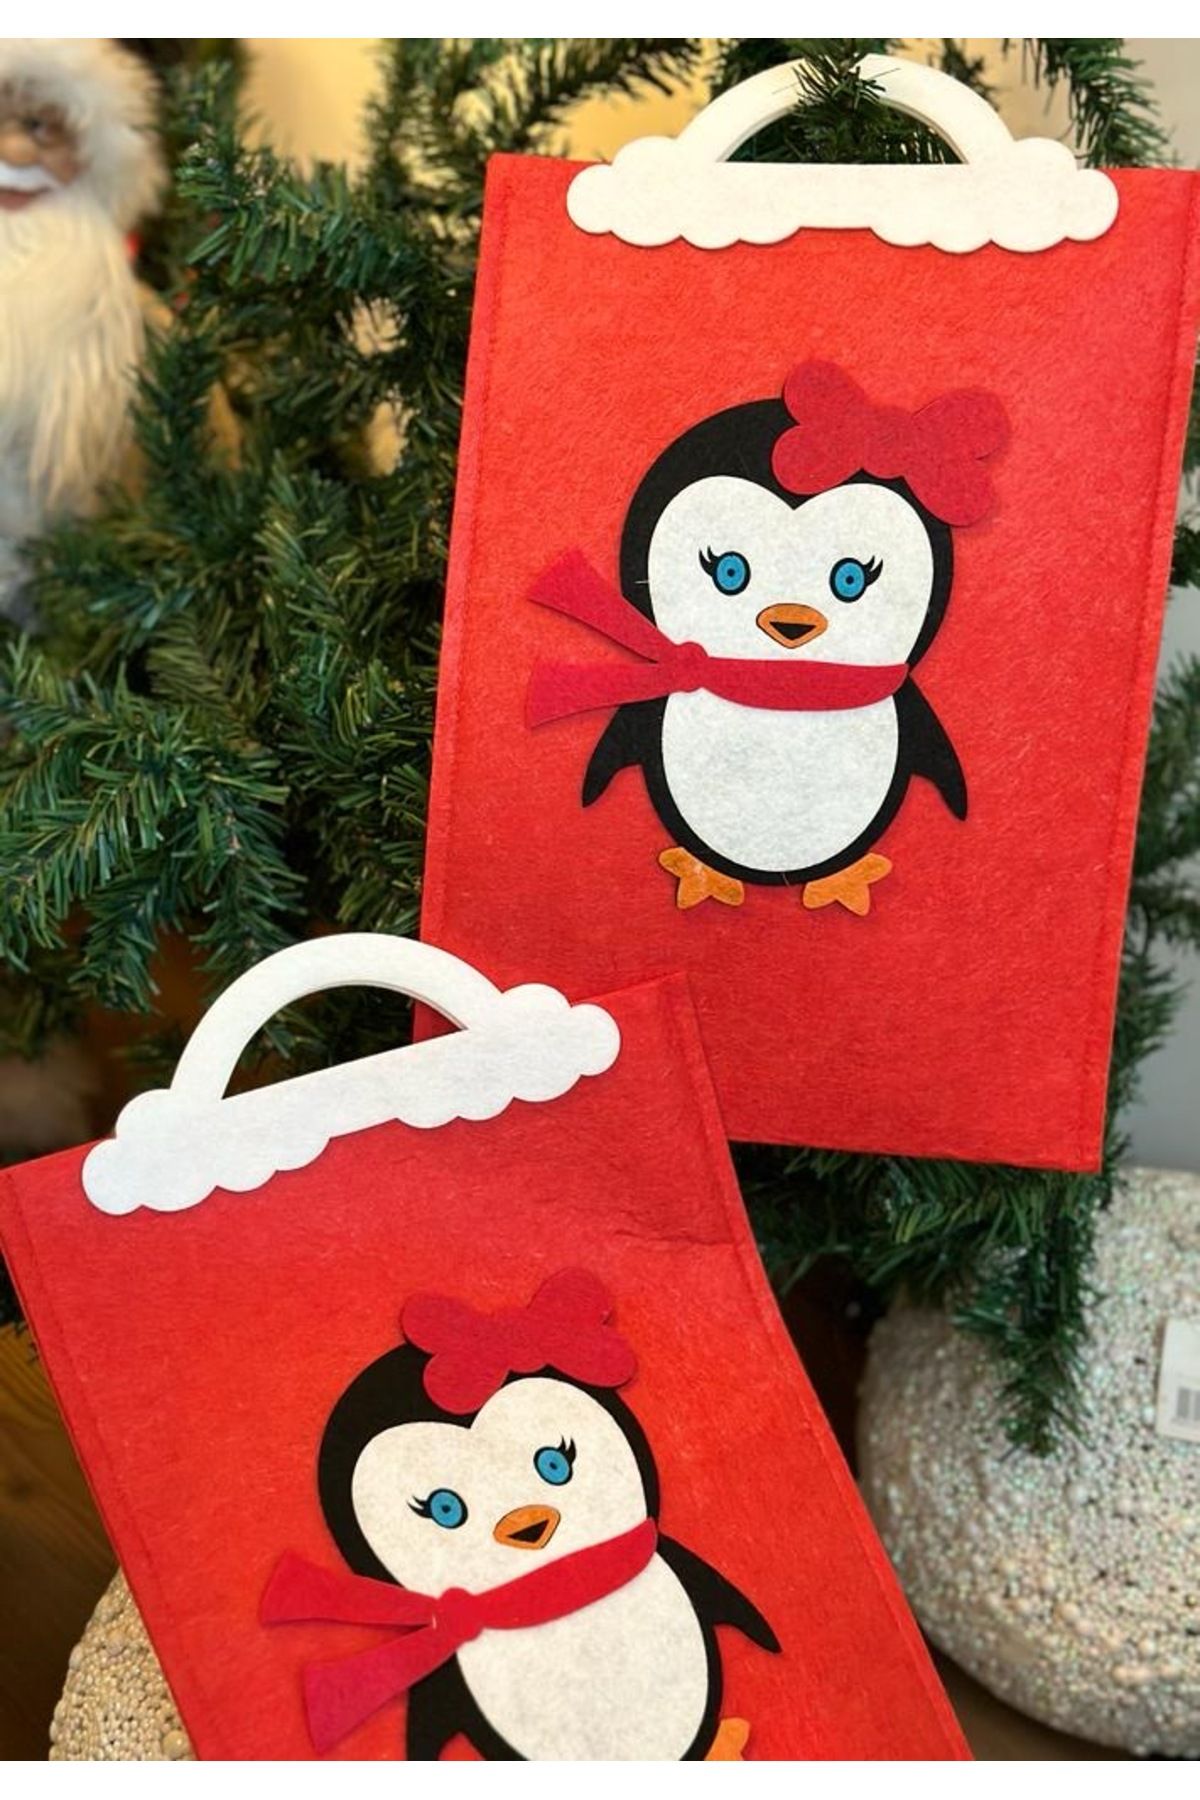 QUEEN AKSESUAR Yılbaşı özel tasarım büyük boy saplı süslü penguen desenli hediye paketi çanta poşet kırmızı keçe